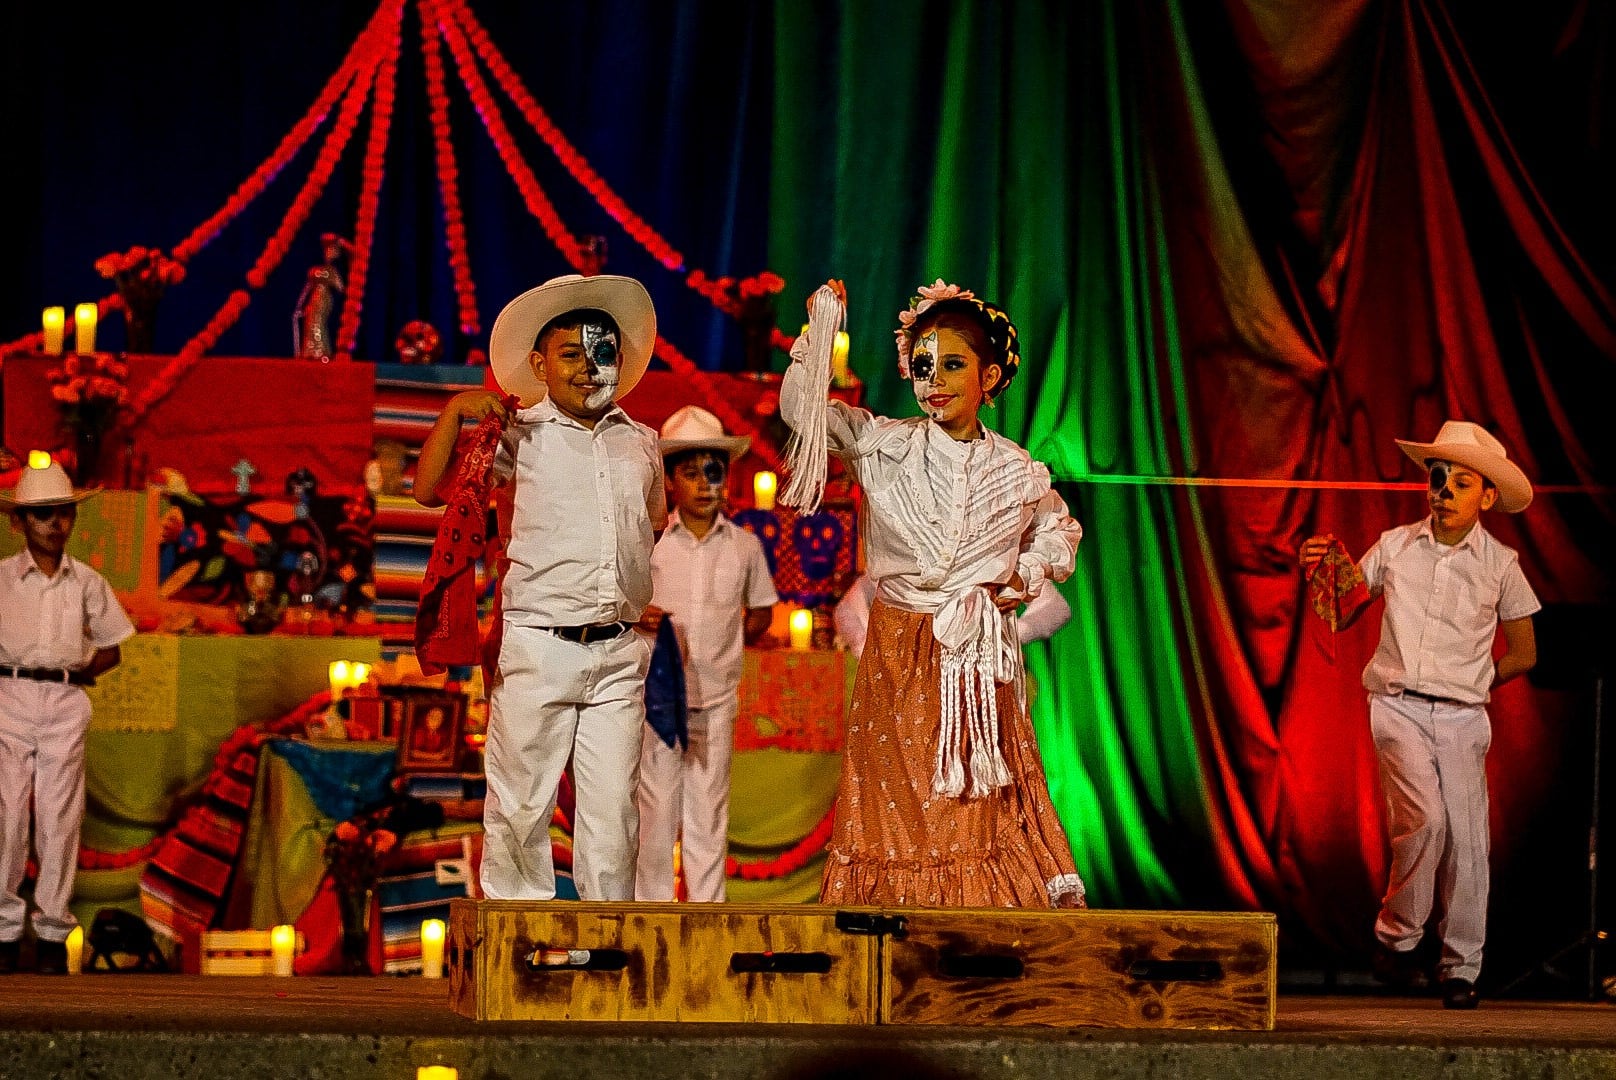 5 kids perform on stage wearing skeleton makeup for Día de los Muertos